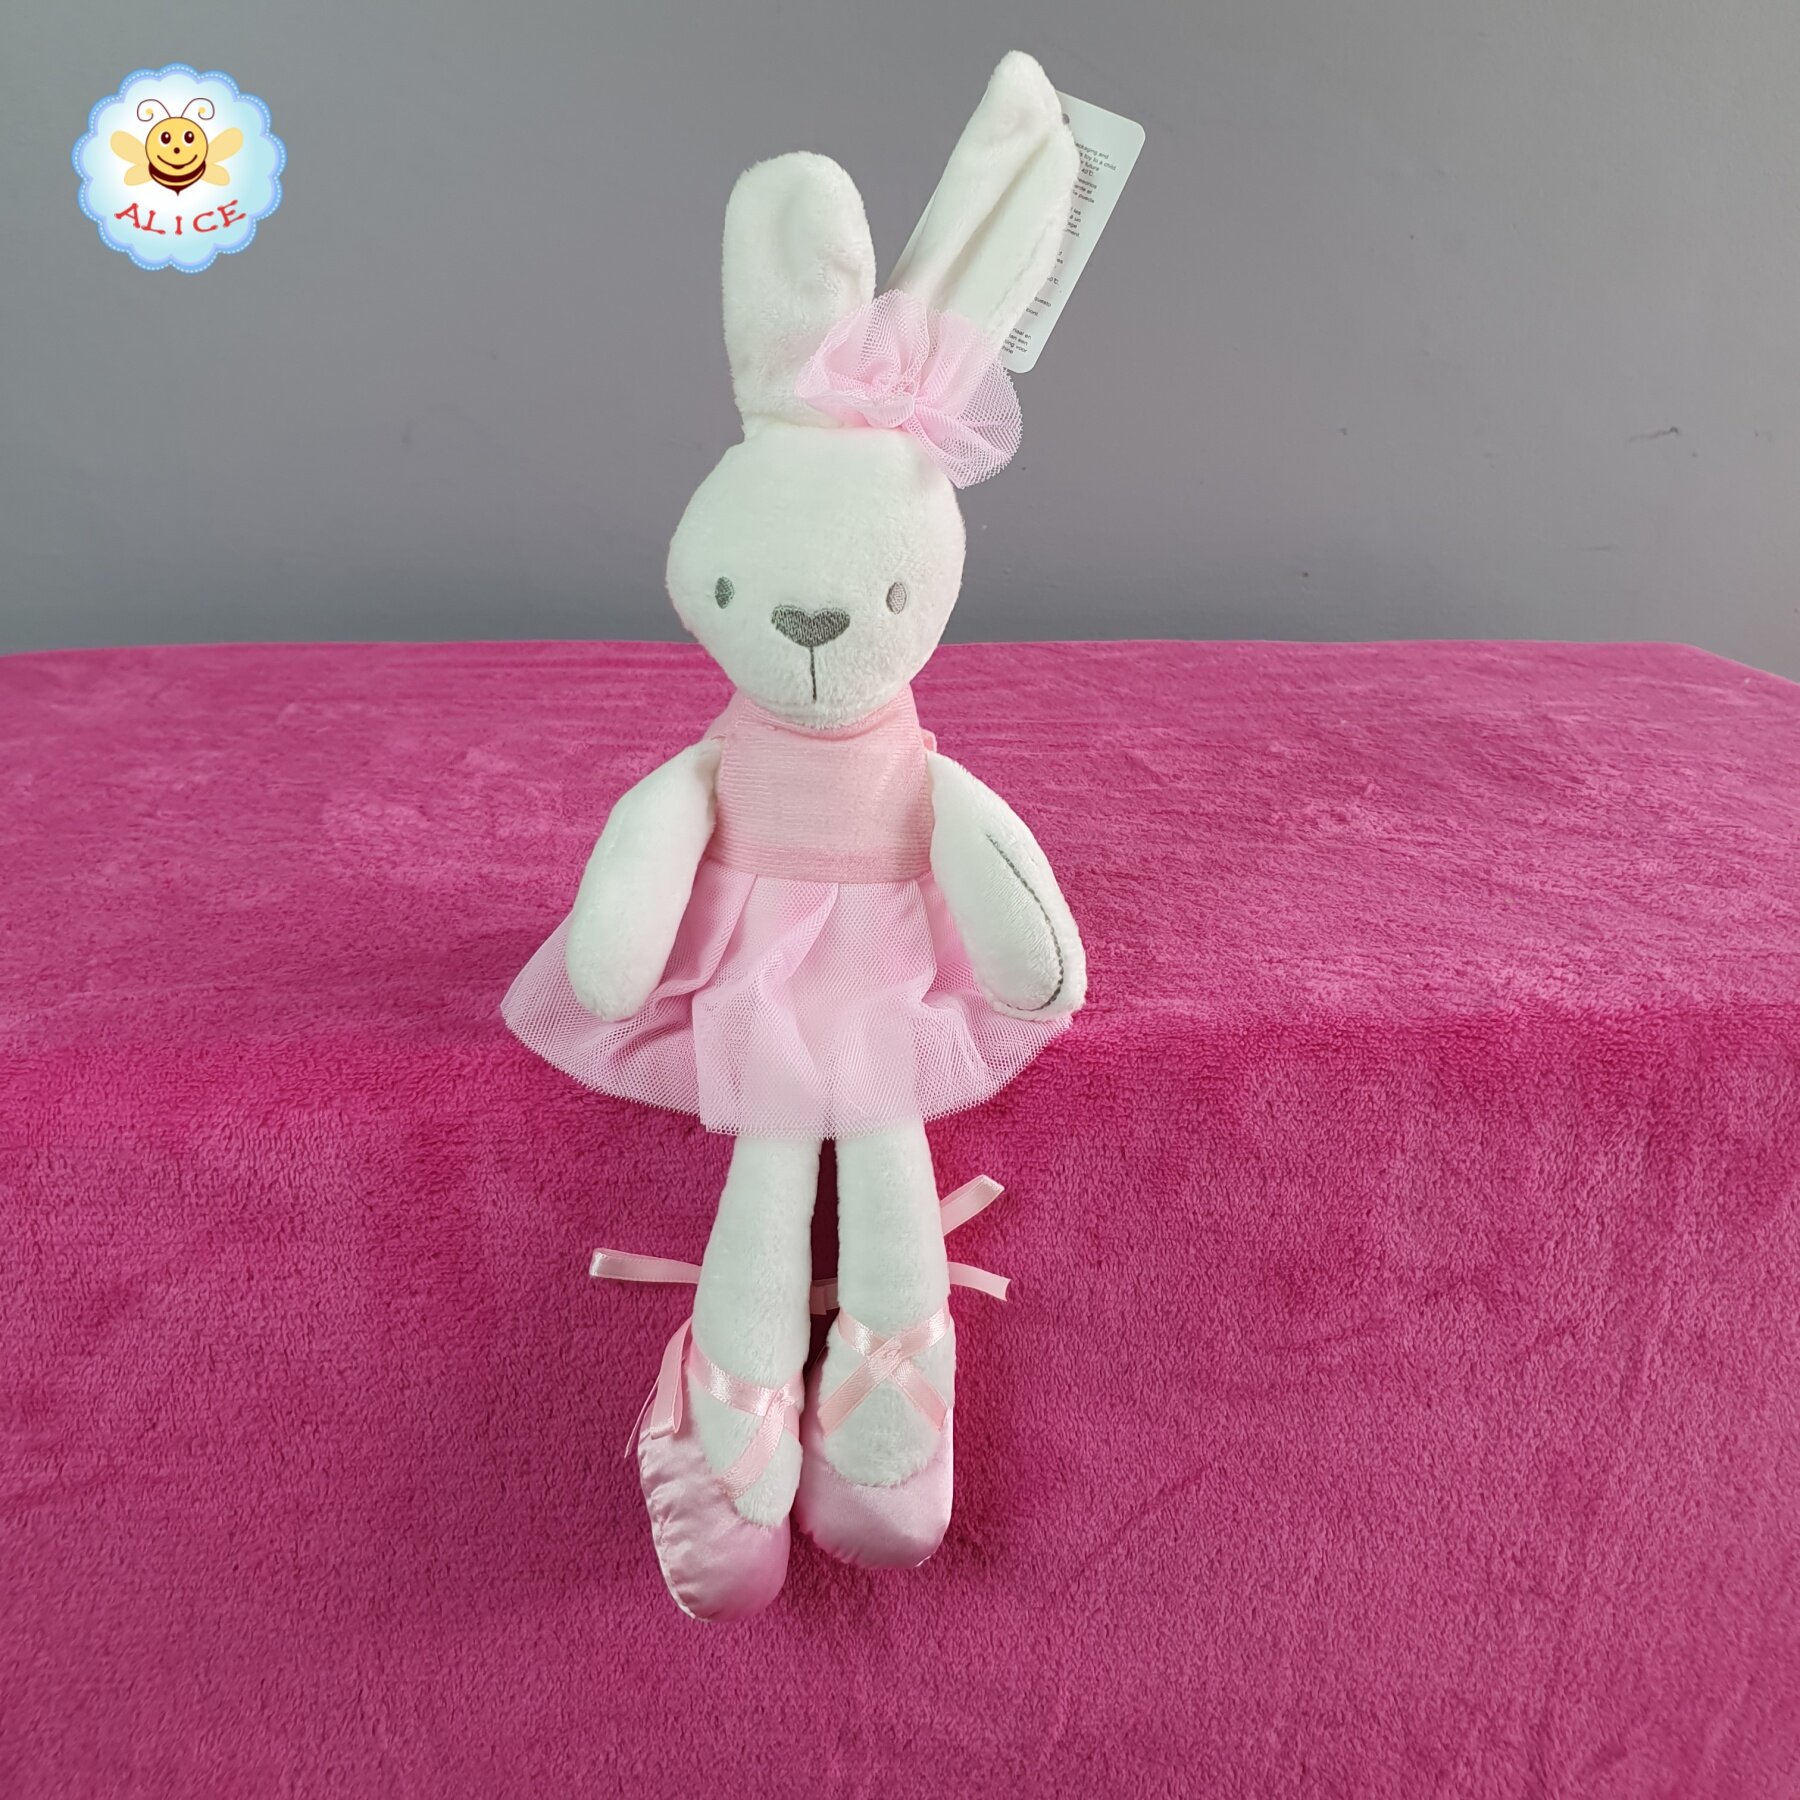 ตุ๊กตา กระต่ายเน่า หมีเน่า กระต่ายใส่ชุดบัลเล่ต์(ชุดถอดได้) นิ่มมาก ของเล่น rabbit bear toy doll alicdolly